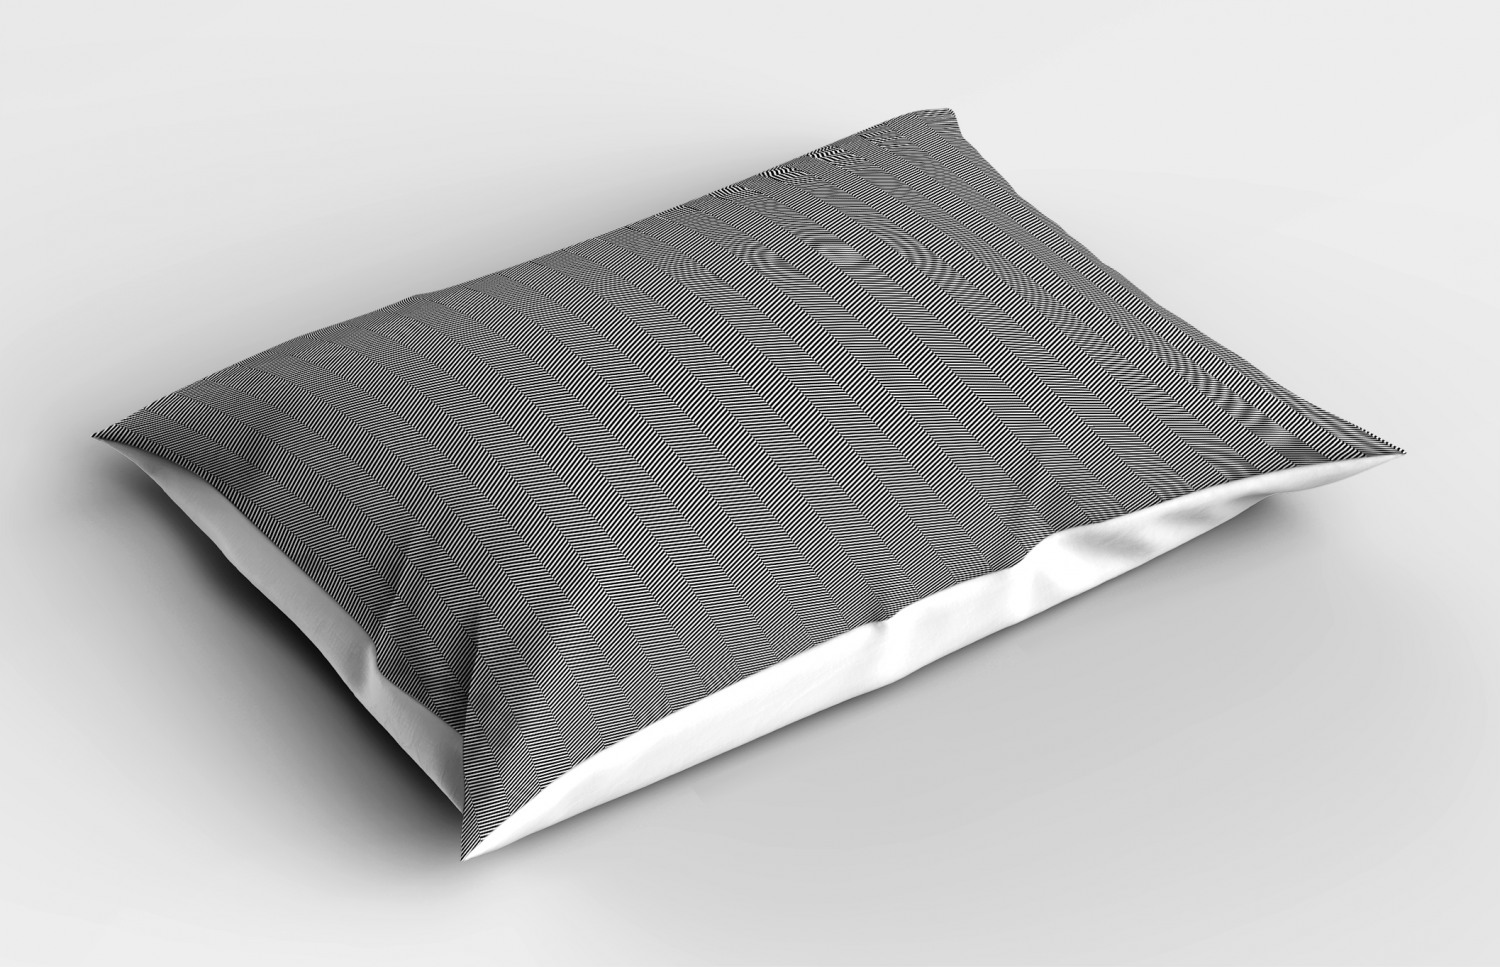 Details about   Monochrome Pillow Sham Decorative Pillowcase 3 Sizes Bedroom Decoration 